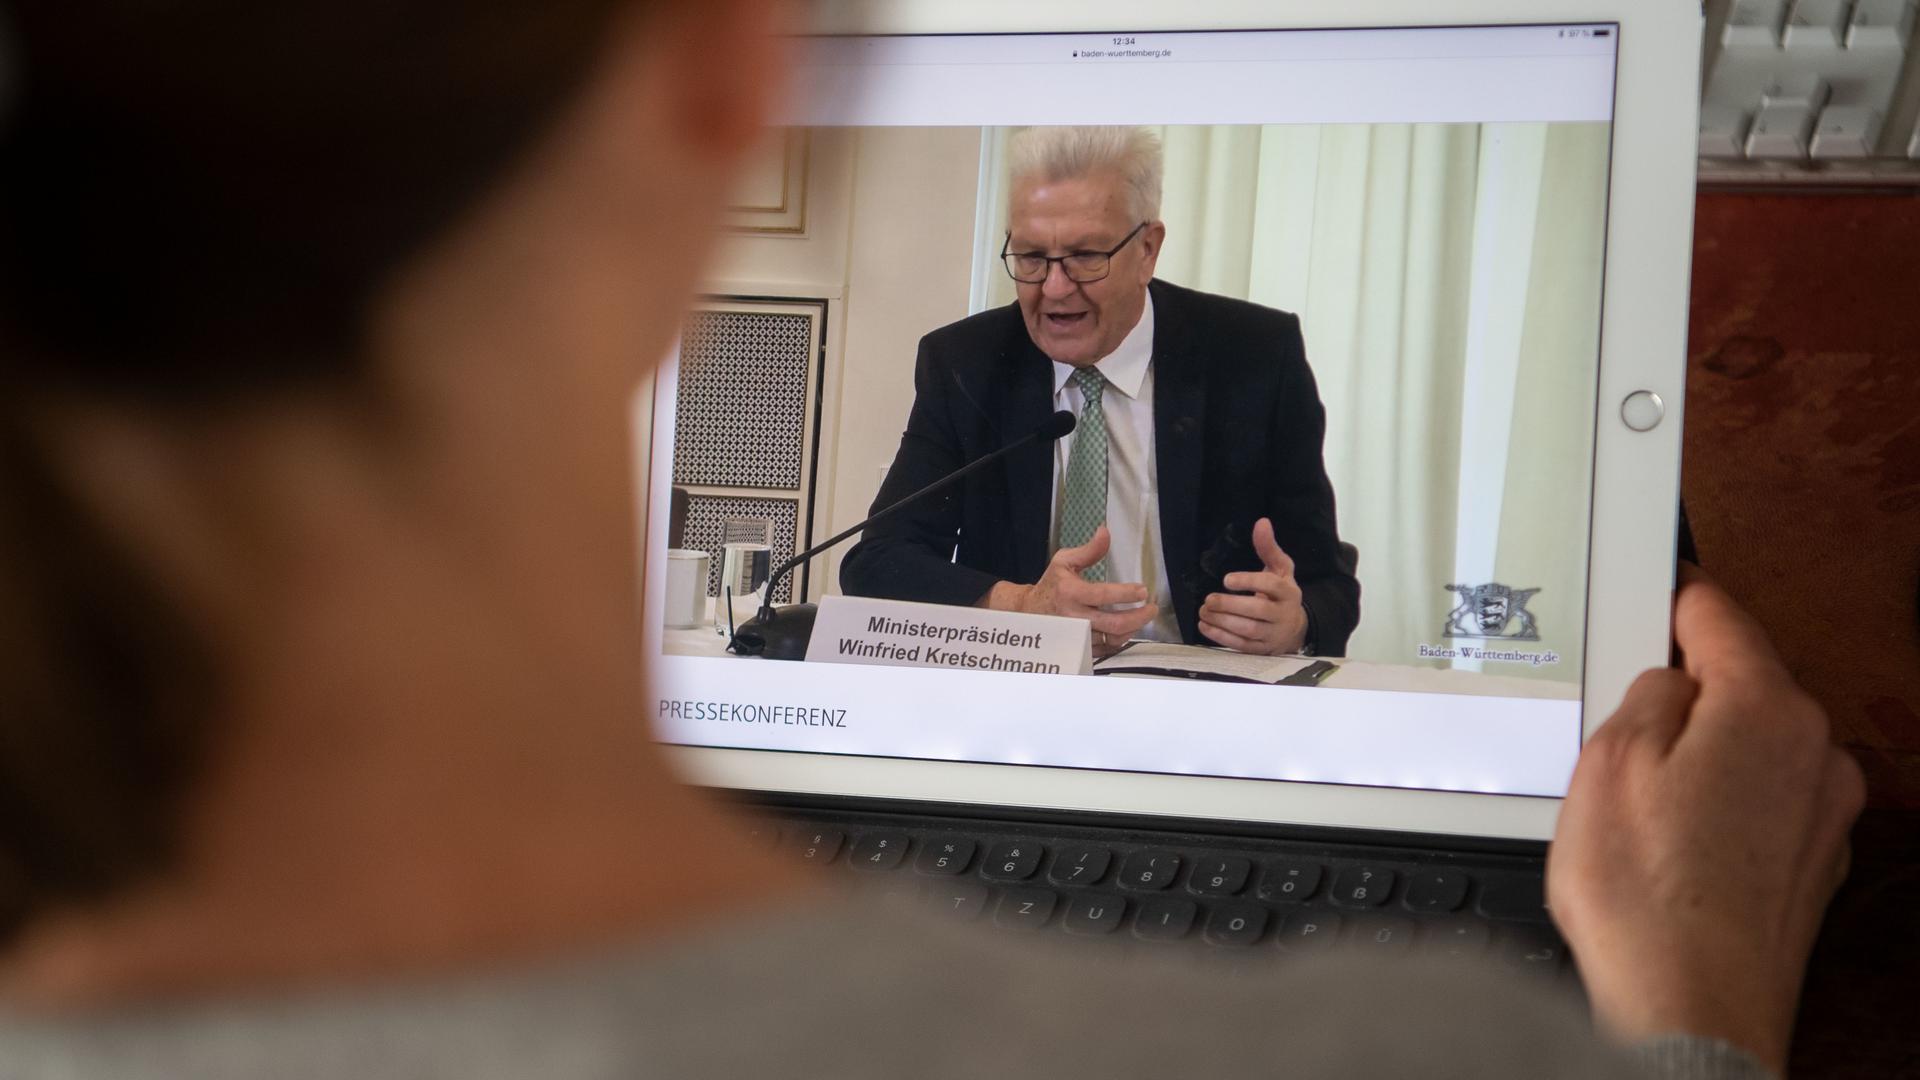 Kontaktfrei: Wie Baden-Württemberg die ersten Schritte der Öffnung aus der Corona-Isolation ausgestaltet, gab Ministerpräsident Winfried Kretschmann per live-stream übers Internet bekannt.